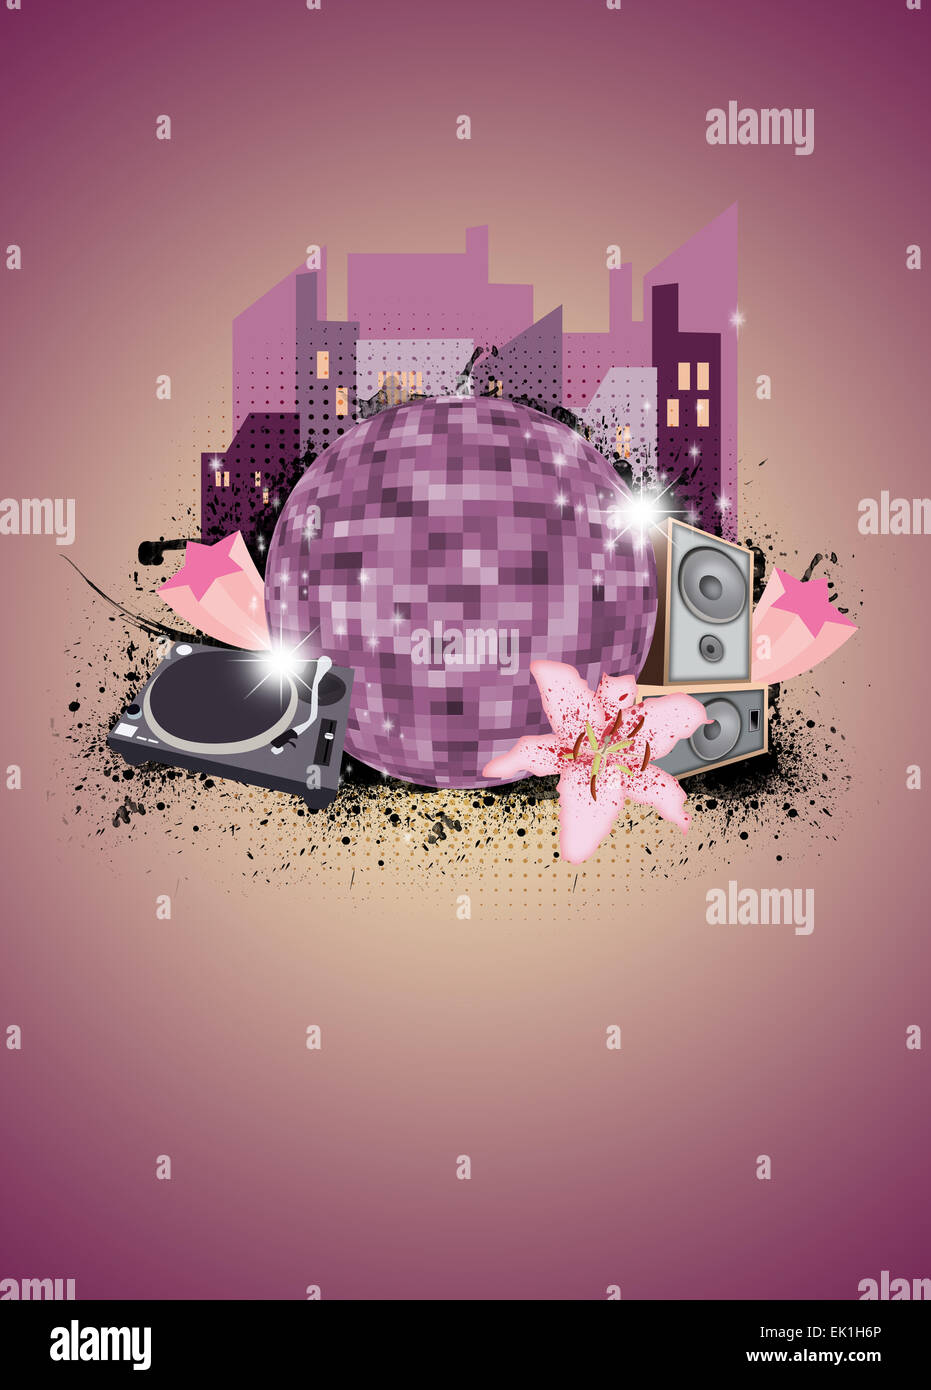 City Musik Party Poster Oder Flyer Hintergrund Mit Raum Stockfotografie Alamy